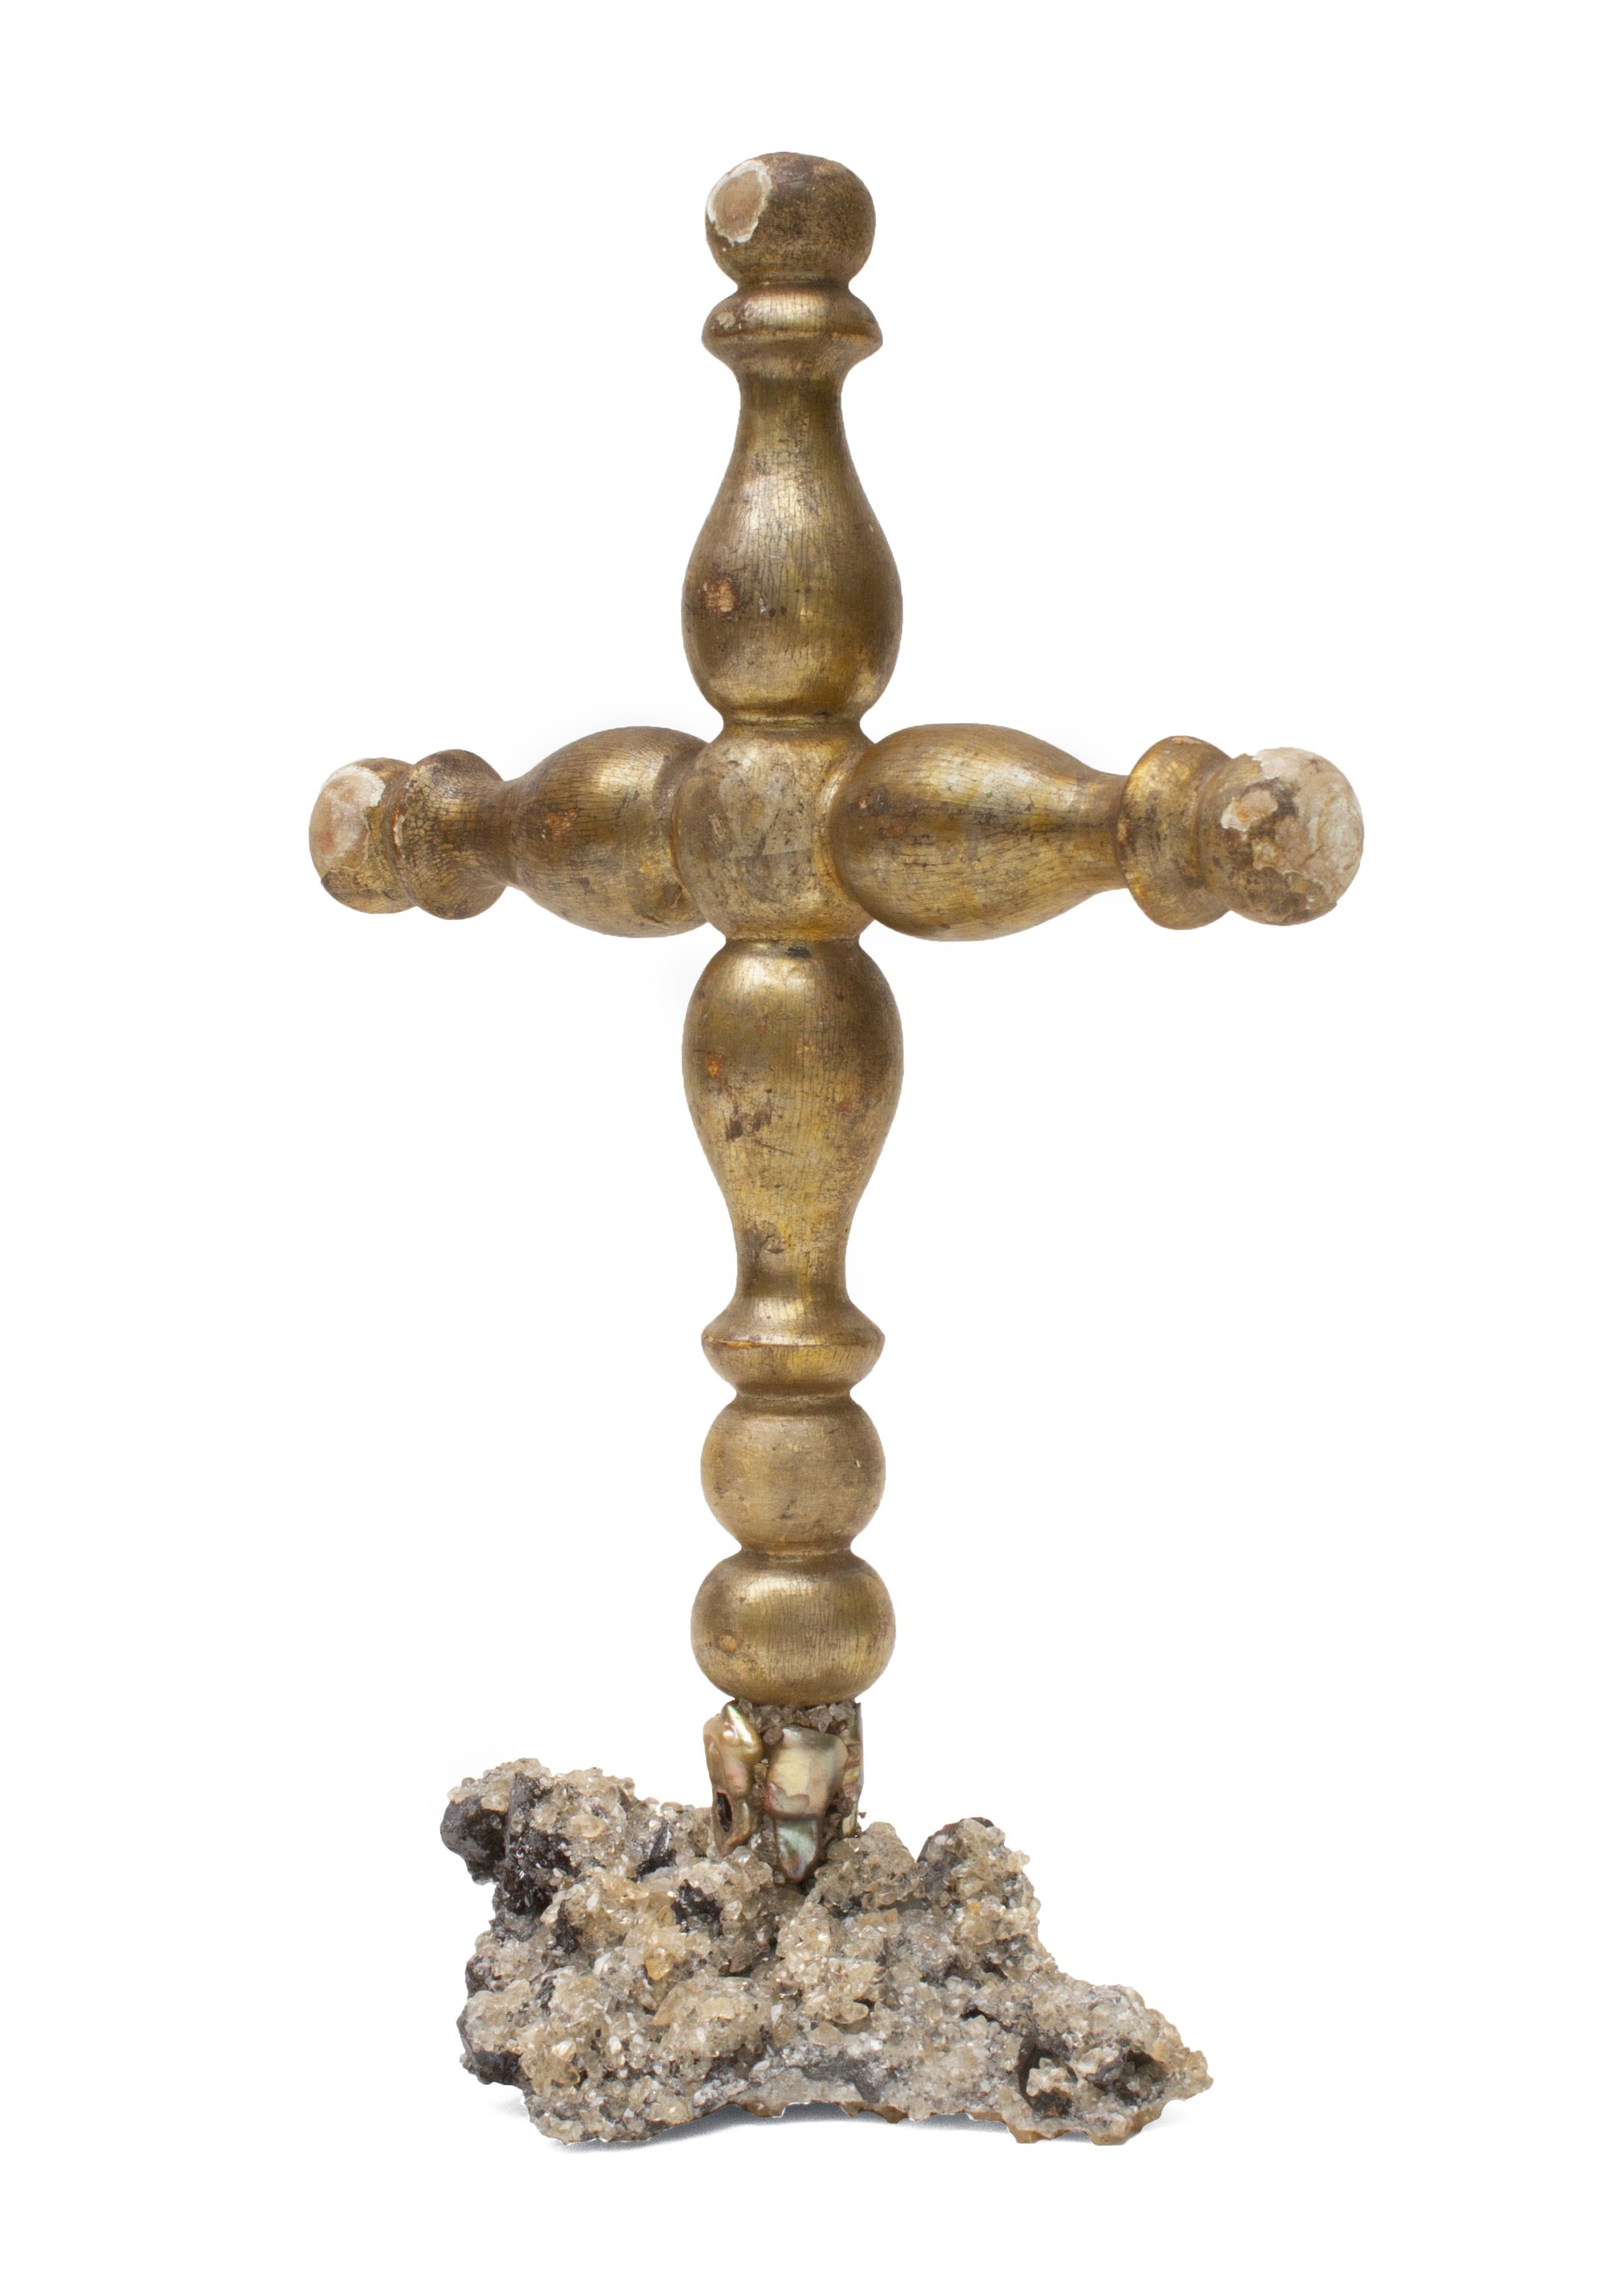 Croix de procession de la Mecque italienne du XVIIIe siècle sur une base en cristal de calcite en matrice avec des perles baroques coordonnées.

L'amas de cristaux de calcite dans la matrice provient de la mine Elmwood au Tennessee. Il s'agit d'un